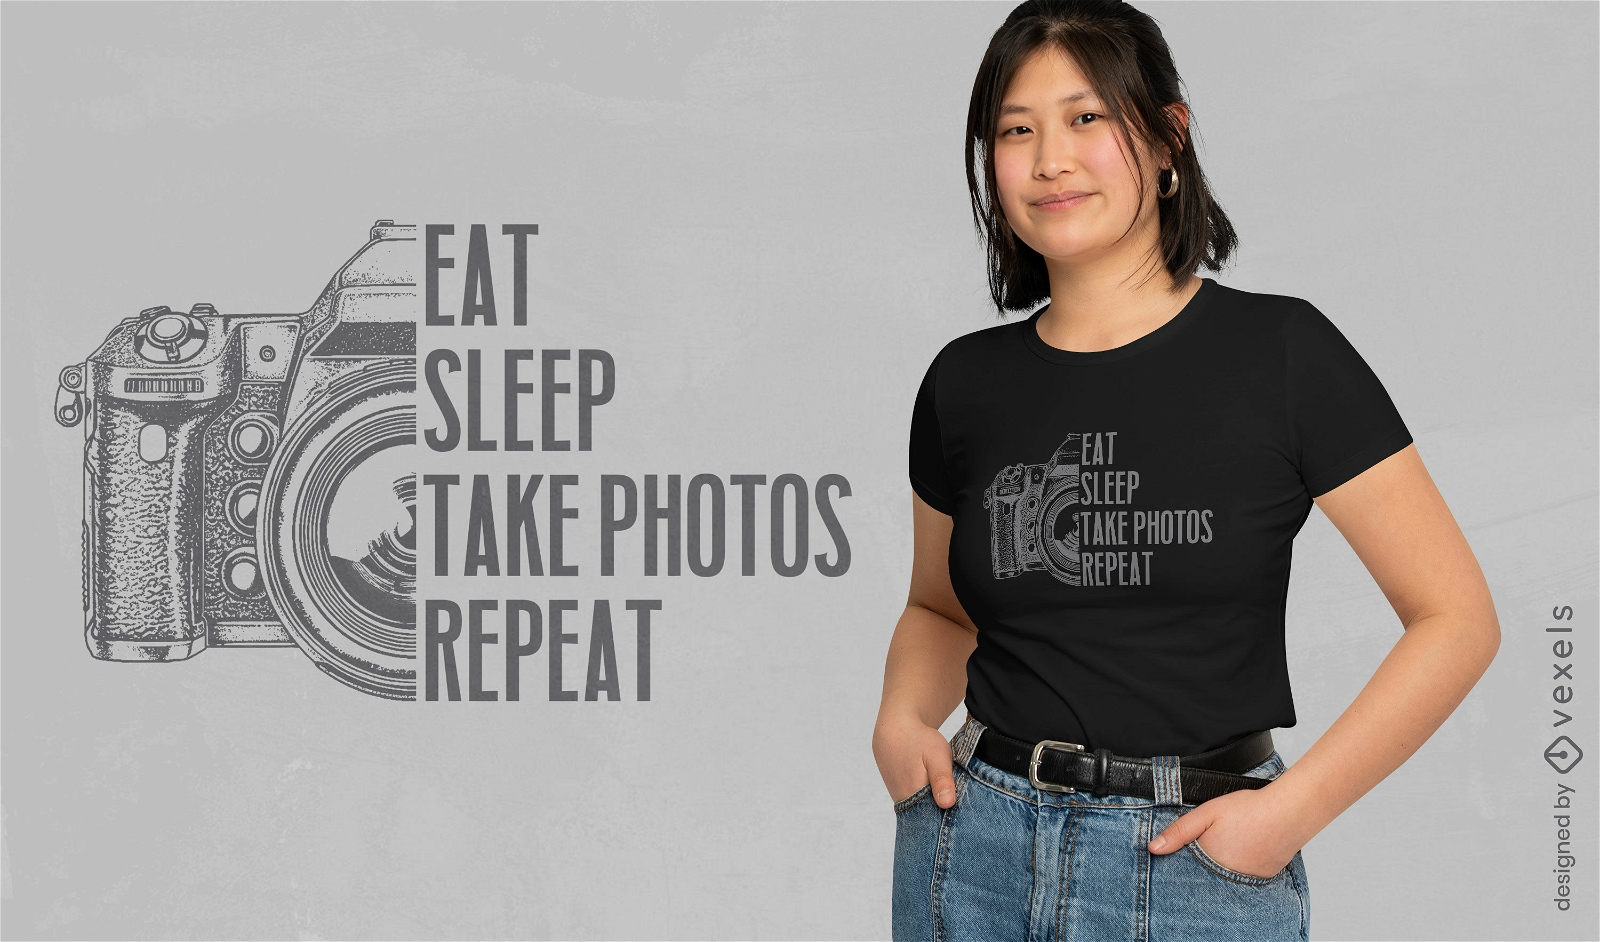 Tirar fotos design de t-shirt de cita??o de rotina